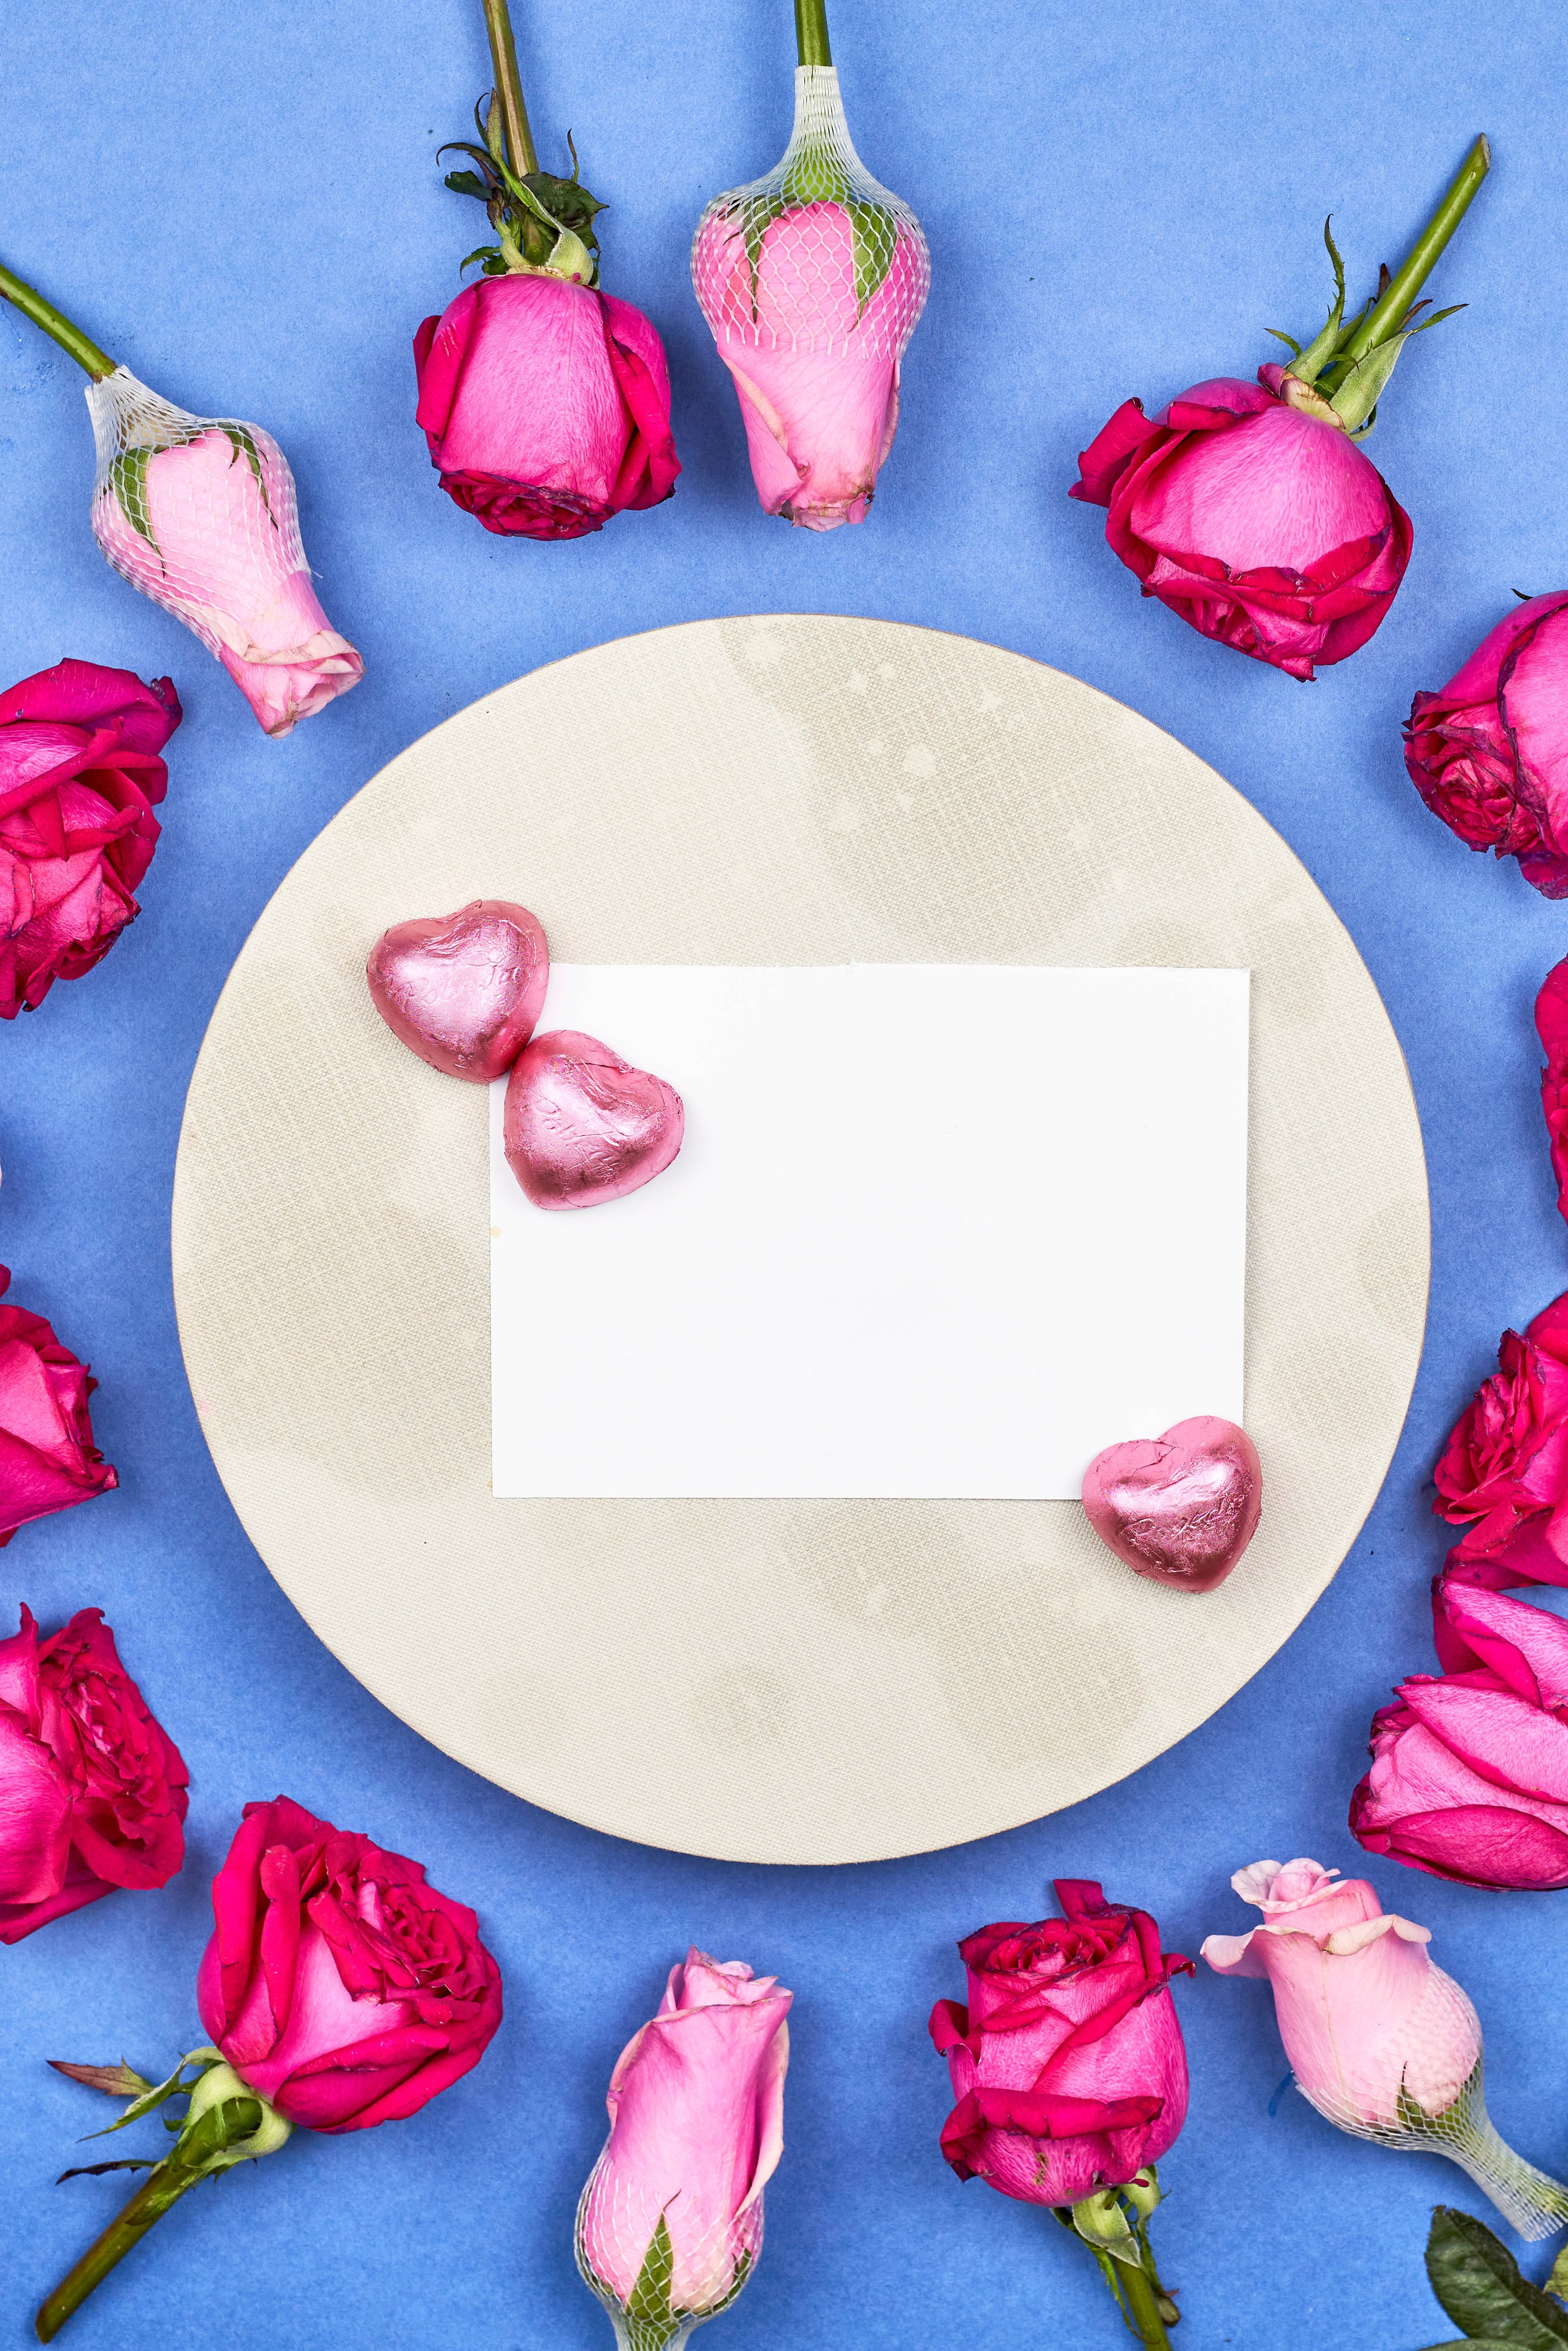 Фотография День всех влюблённых Сердце Лист бумаги Розы Конфеты Цветы Шаблон поздравительной открытки  для мобильного телефона День святого Валентина серце сердца сердечко роза цветок